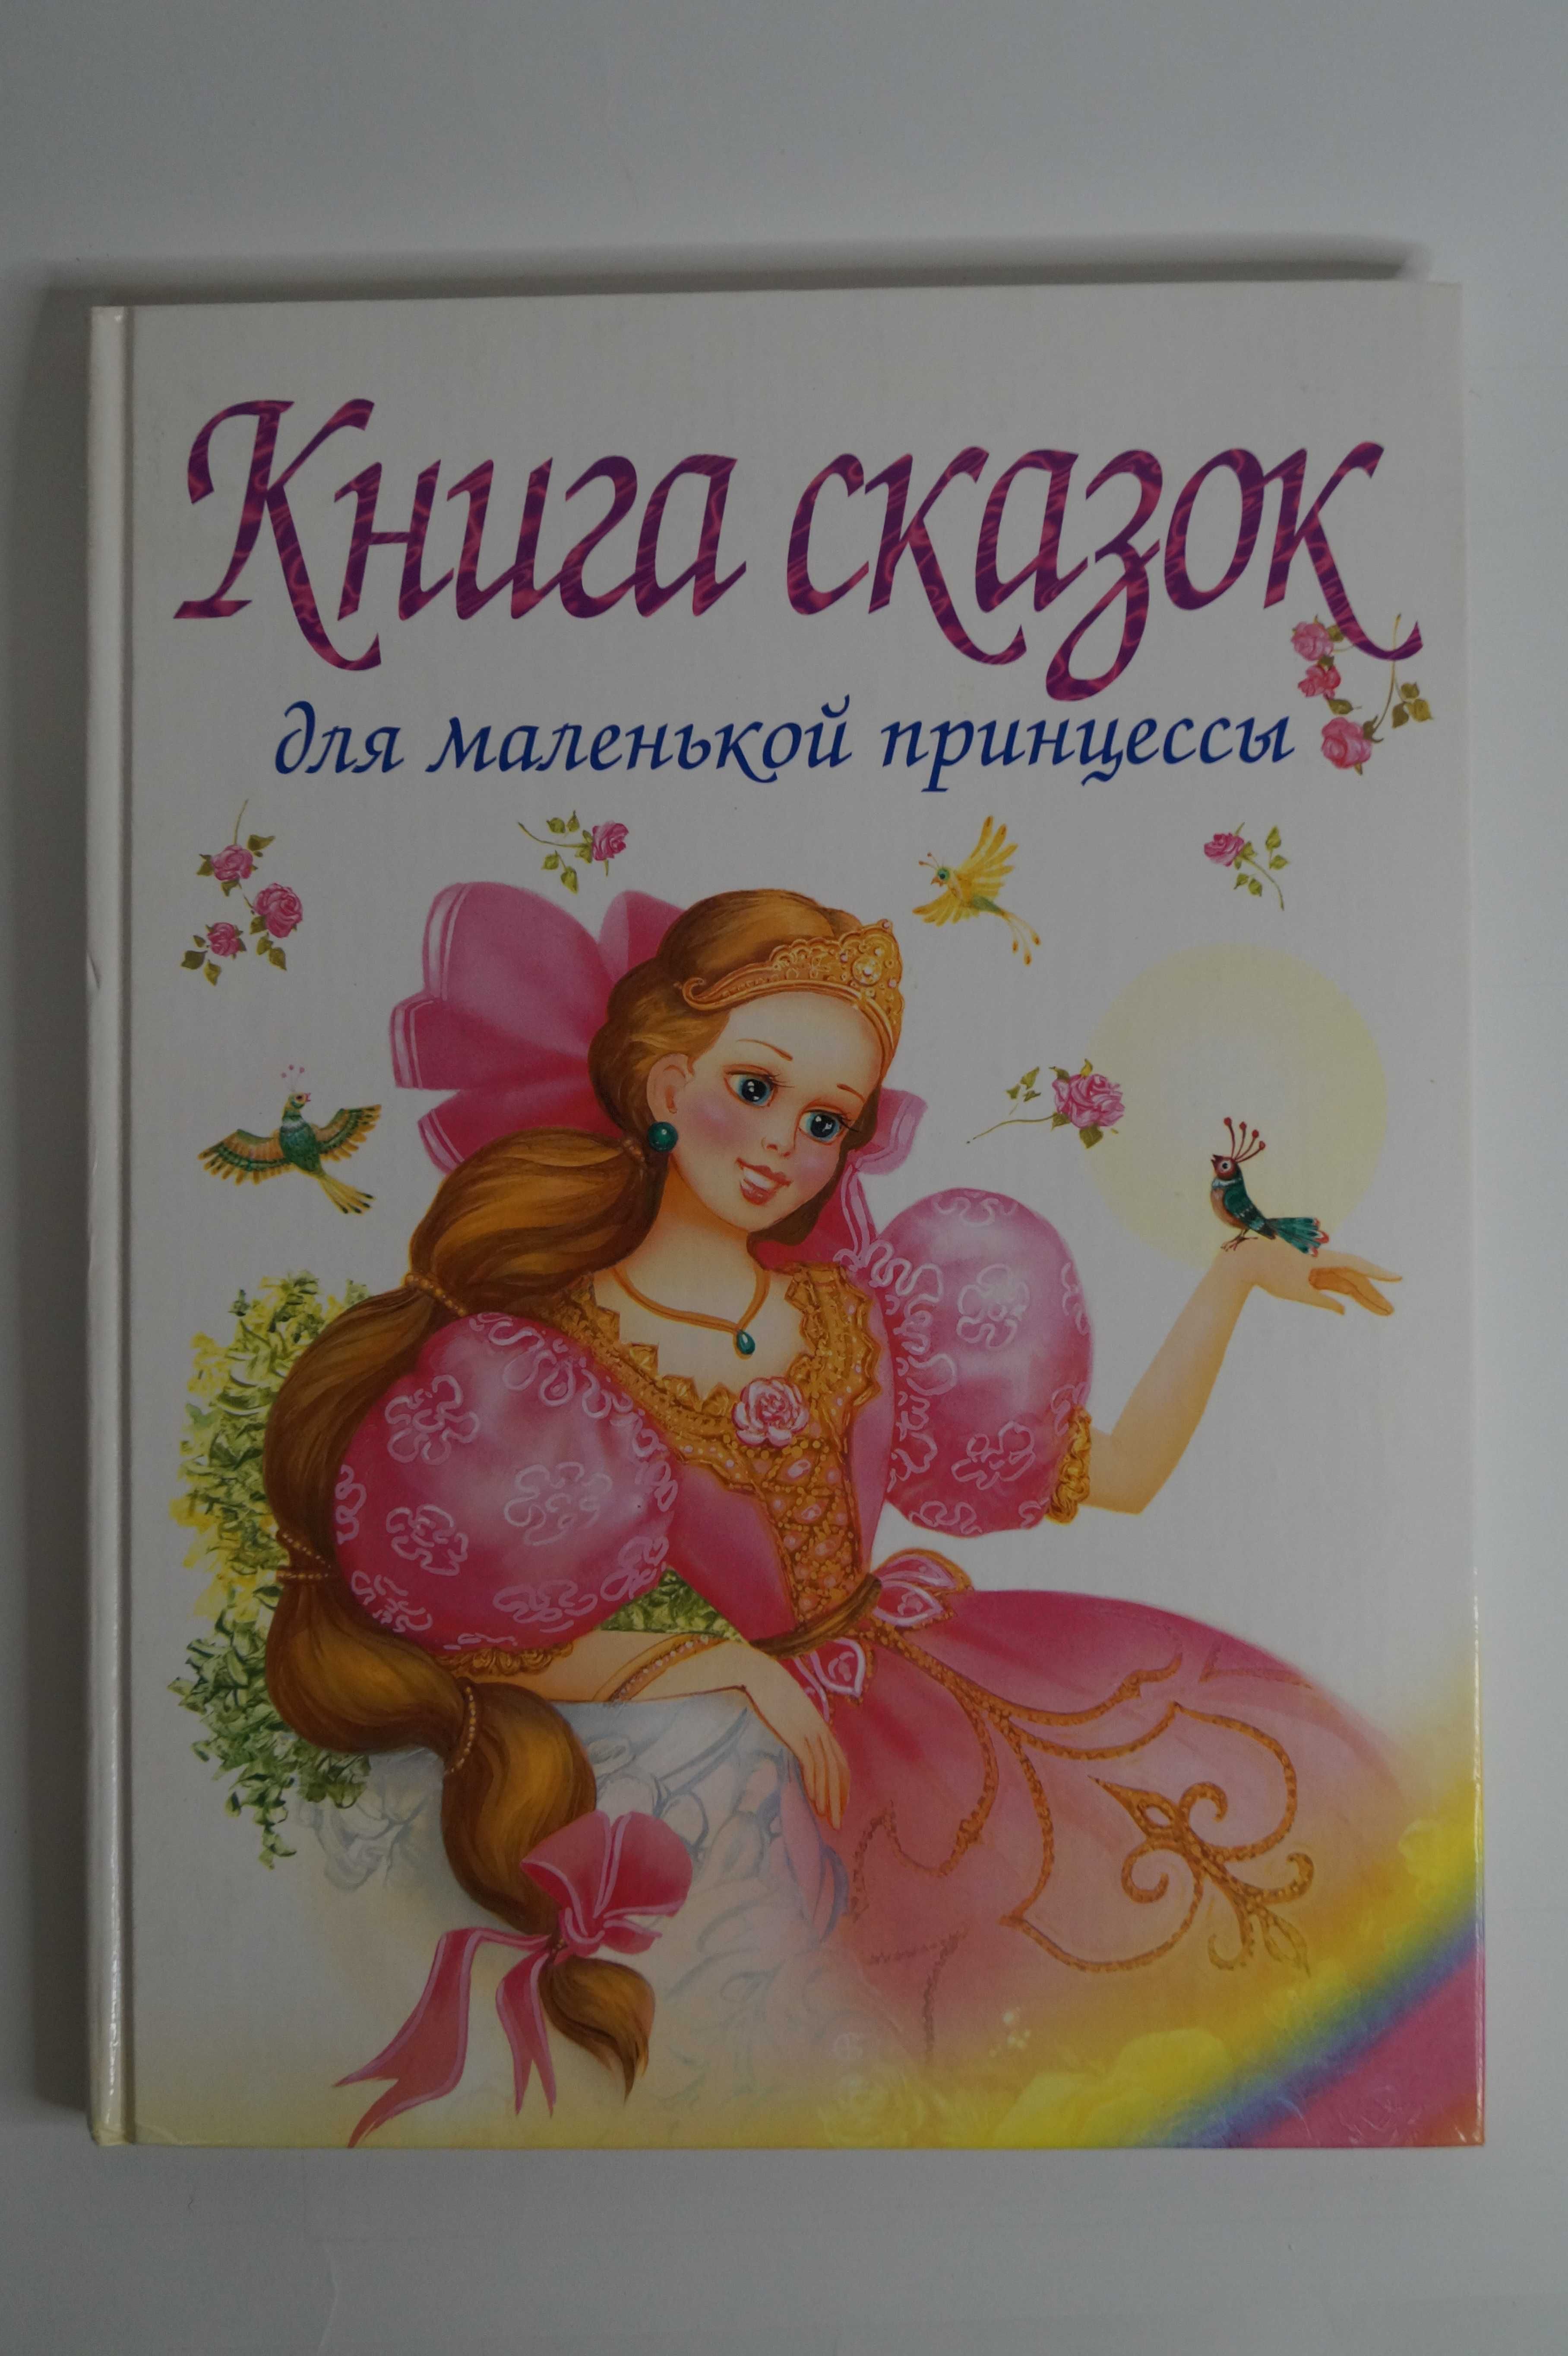 Книга сказок для маленькой принцессы